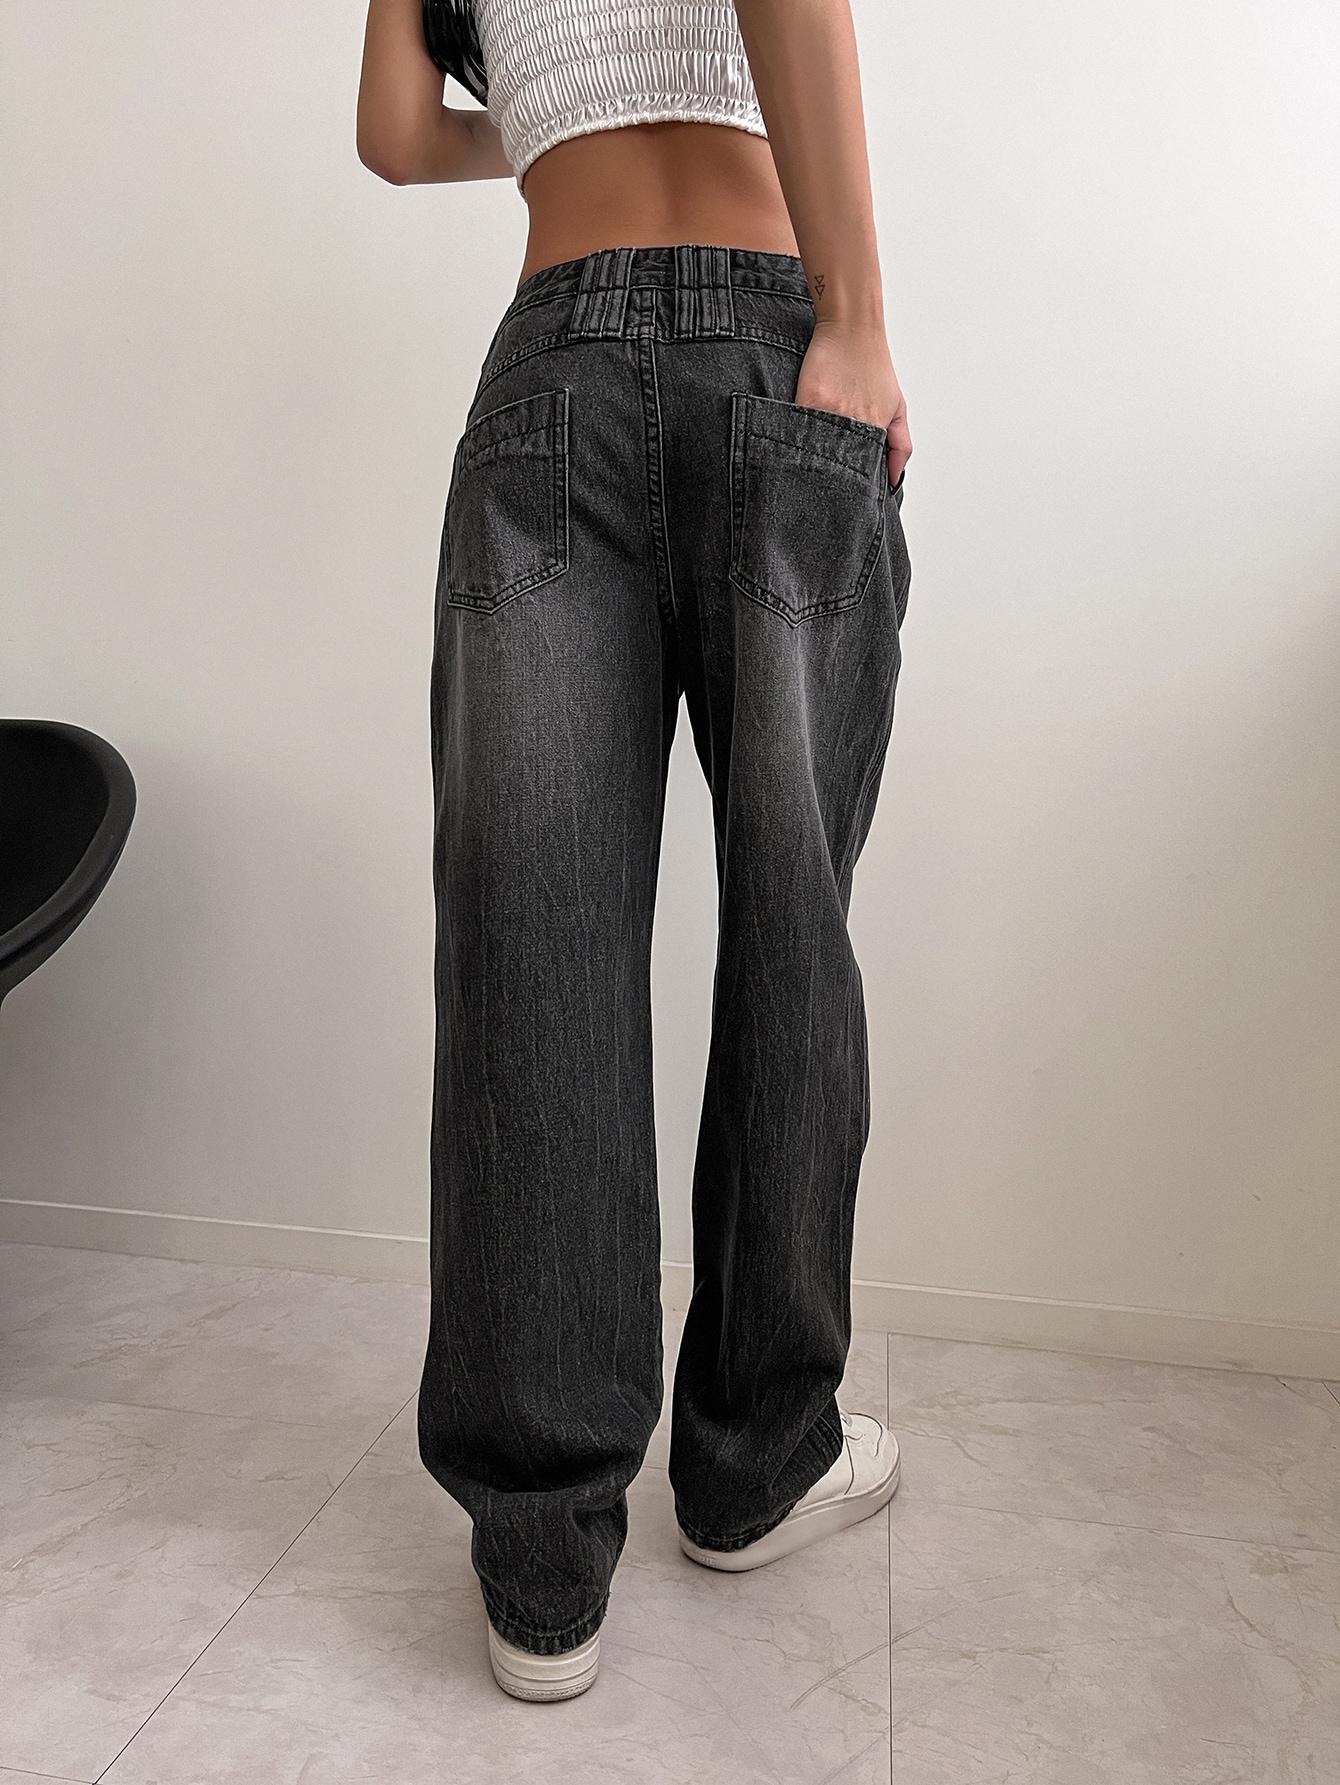 szare spodnie jeans szerokie nogawki kieszenie